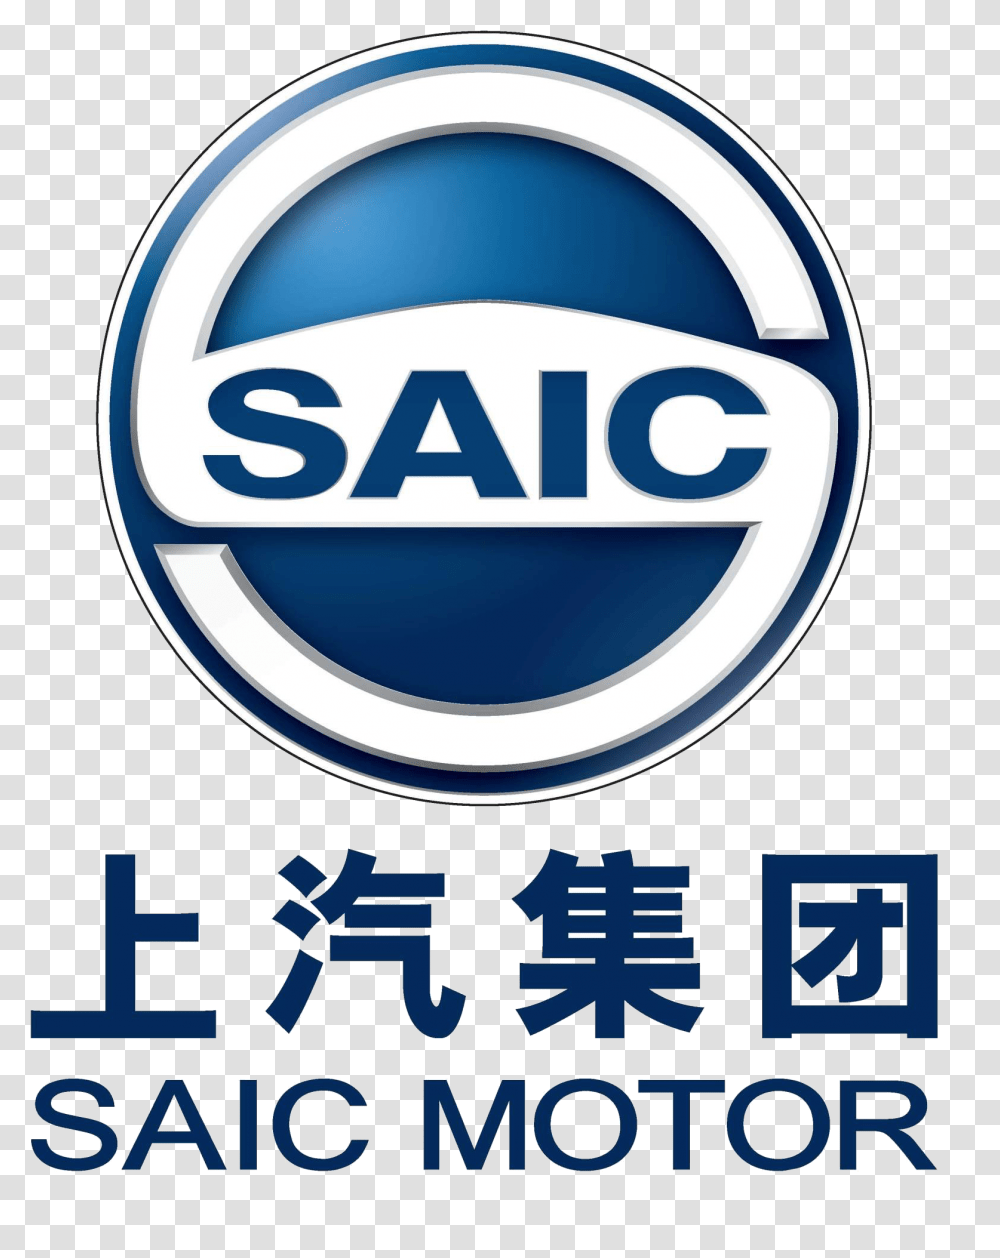 Saic Motor Saic Motor Logo, Symbol, Trademark, Text, Poster Transparent Png